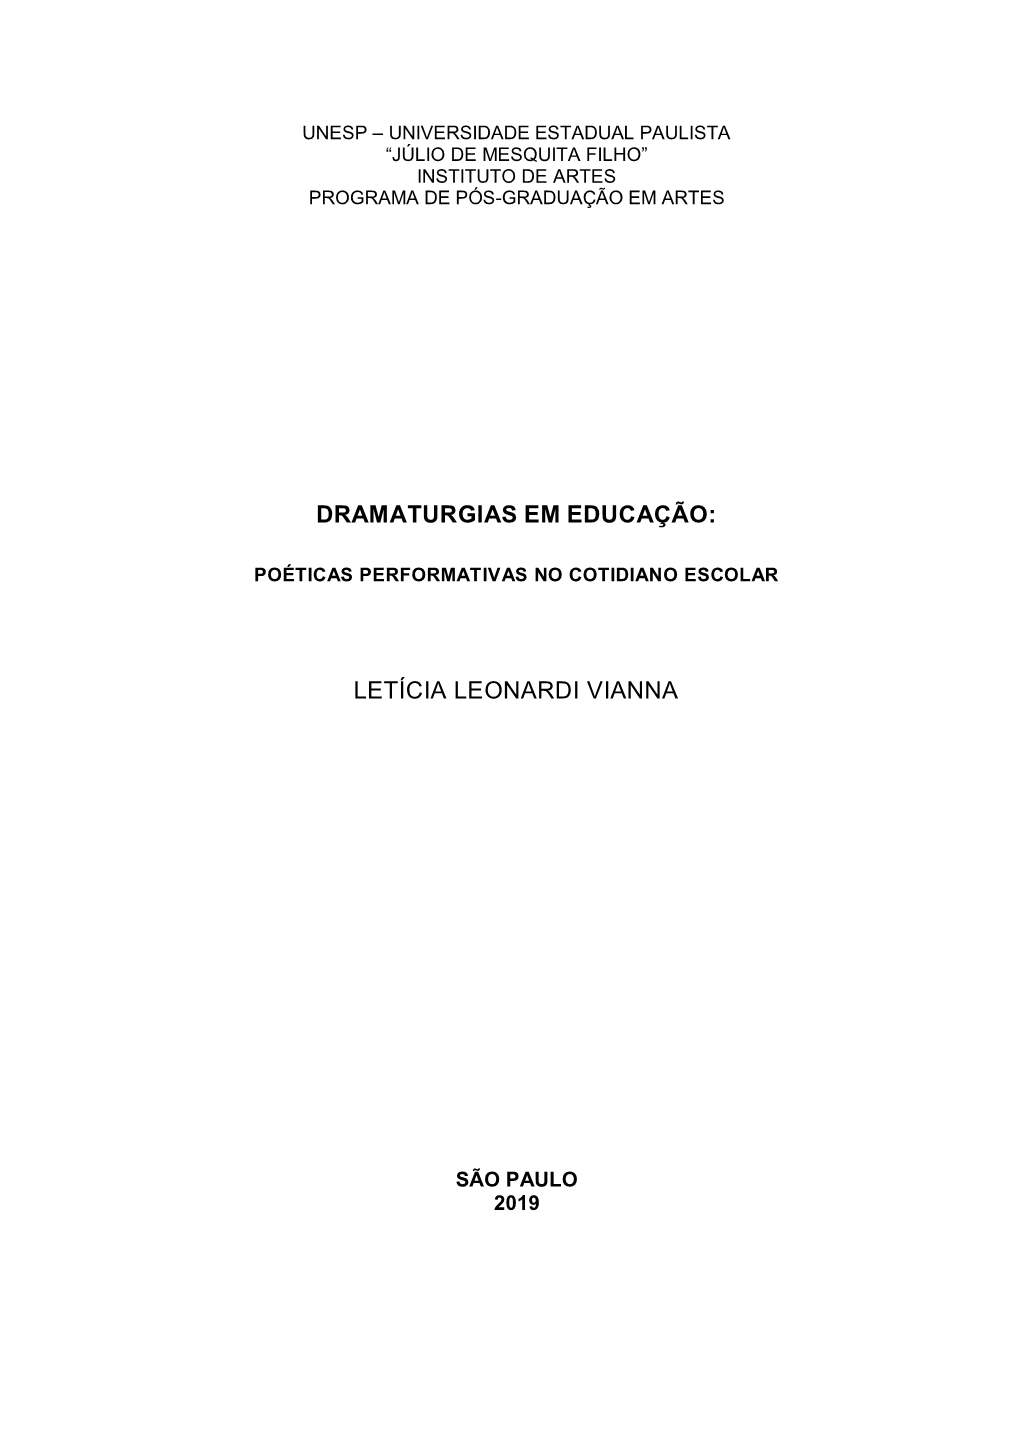 Letícia Leonardi Vianna